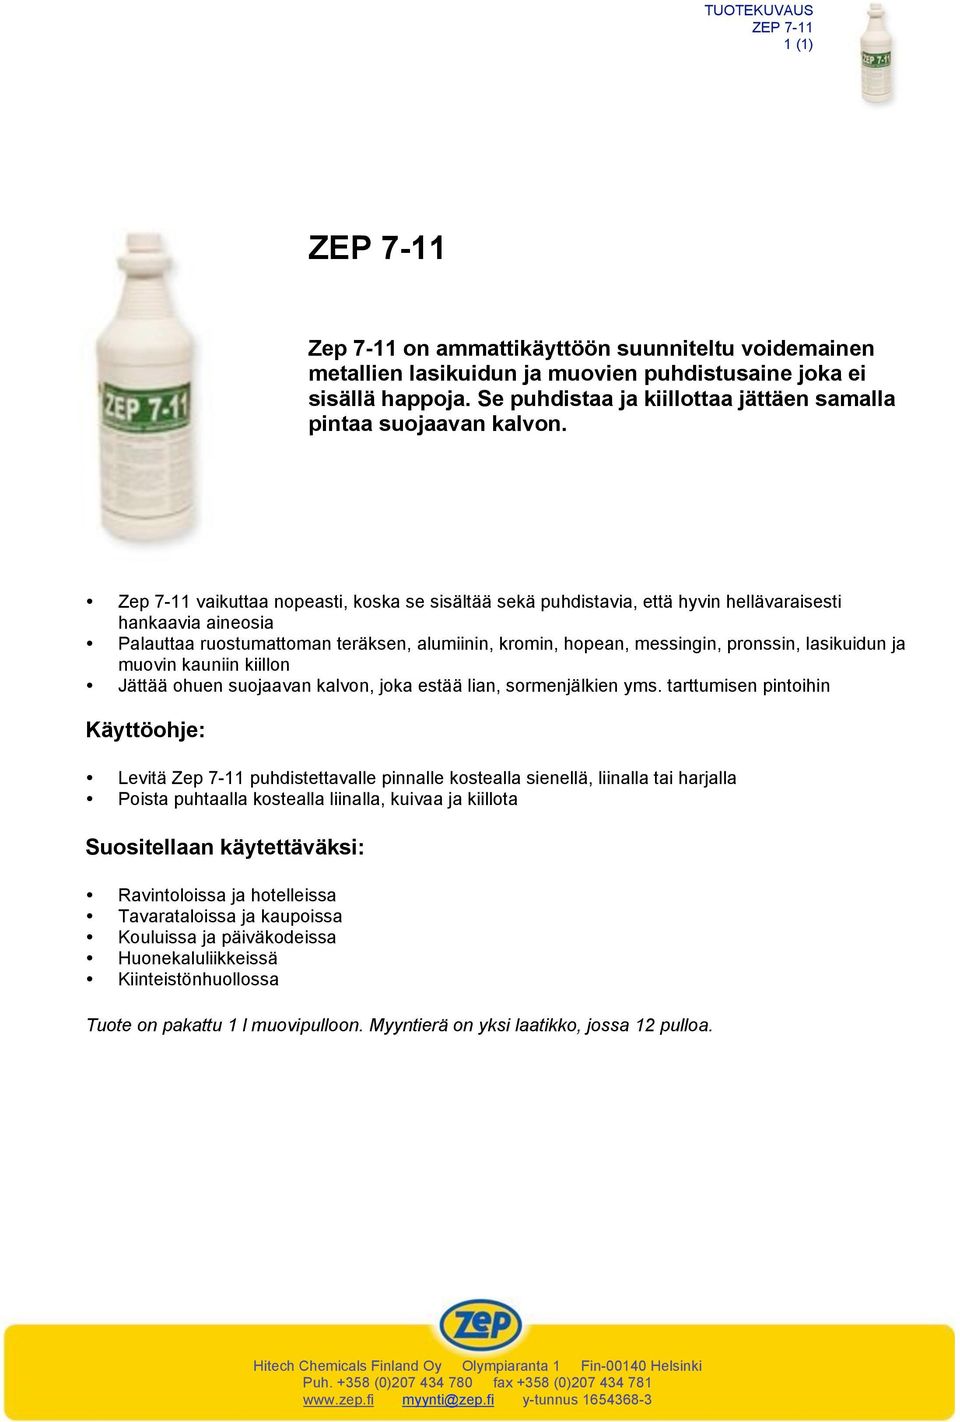 Zep 7-11 vaikuttaa nopeasti, koska se sisältää sekä puhdistavia, että hyvin hellävaraisesti hankaavia aineosia Palauttaa ruostumattoman teräksen, alumiinin, kromin, hopean, messingin, pronssin,